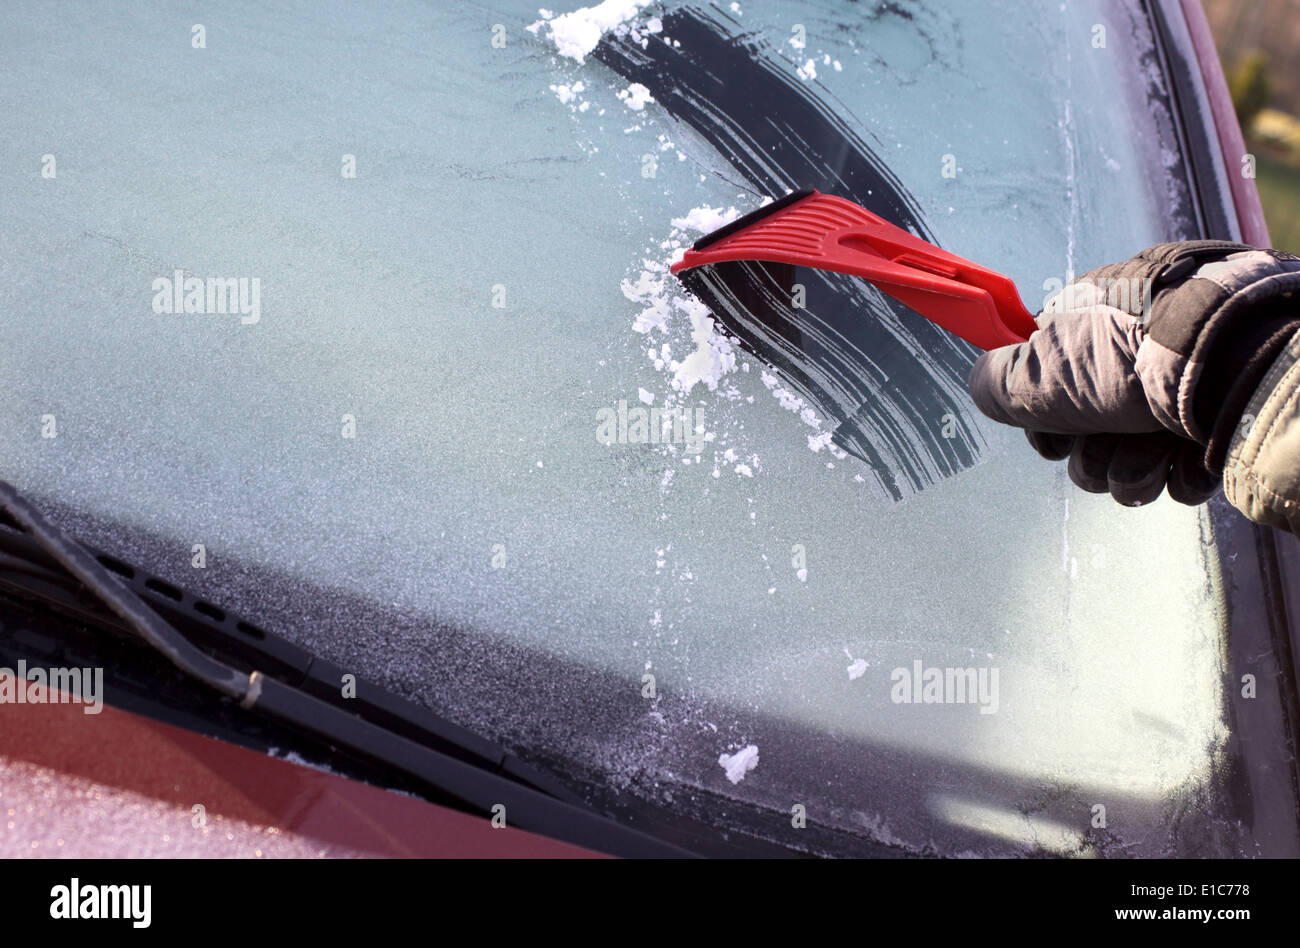 La raschiatura del ghiaccio dal finestrino dell'auto, con copia spazio sulla sinistra Foto Stock